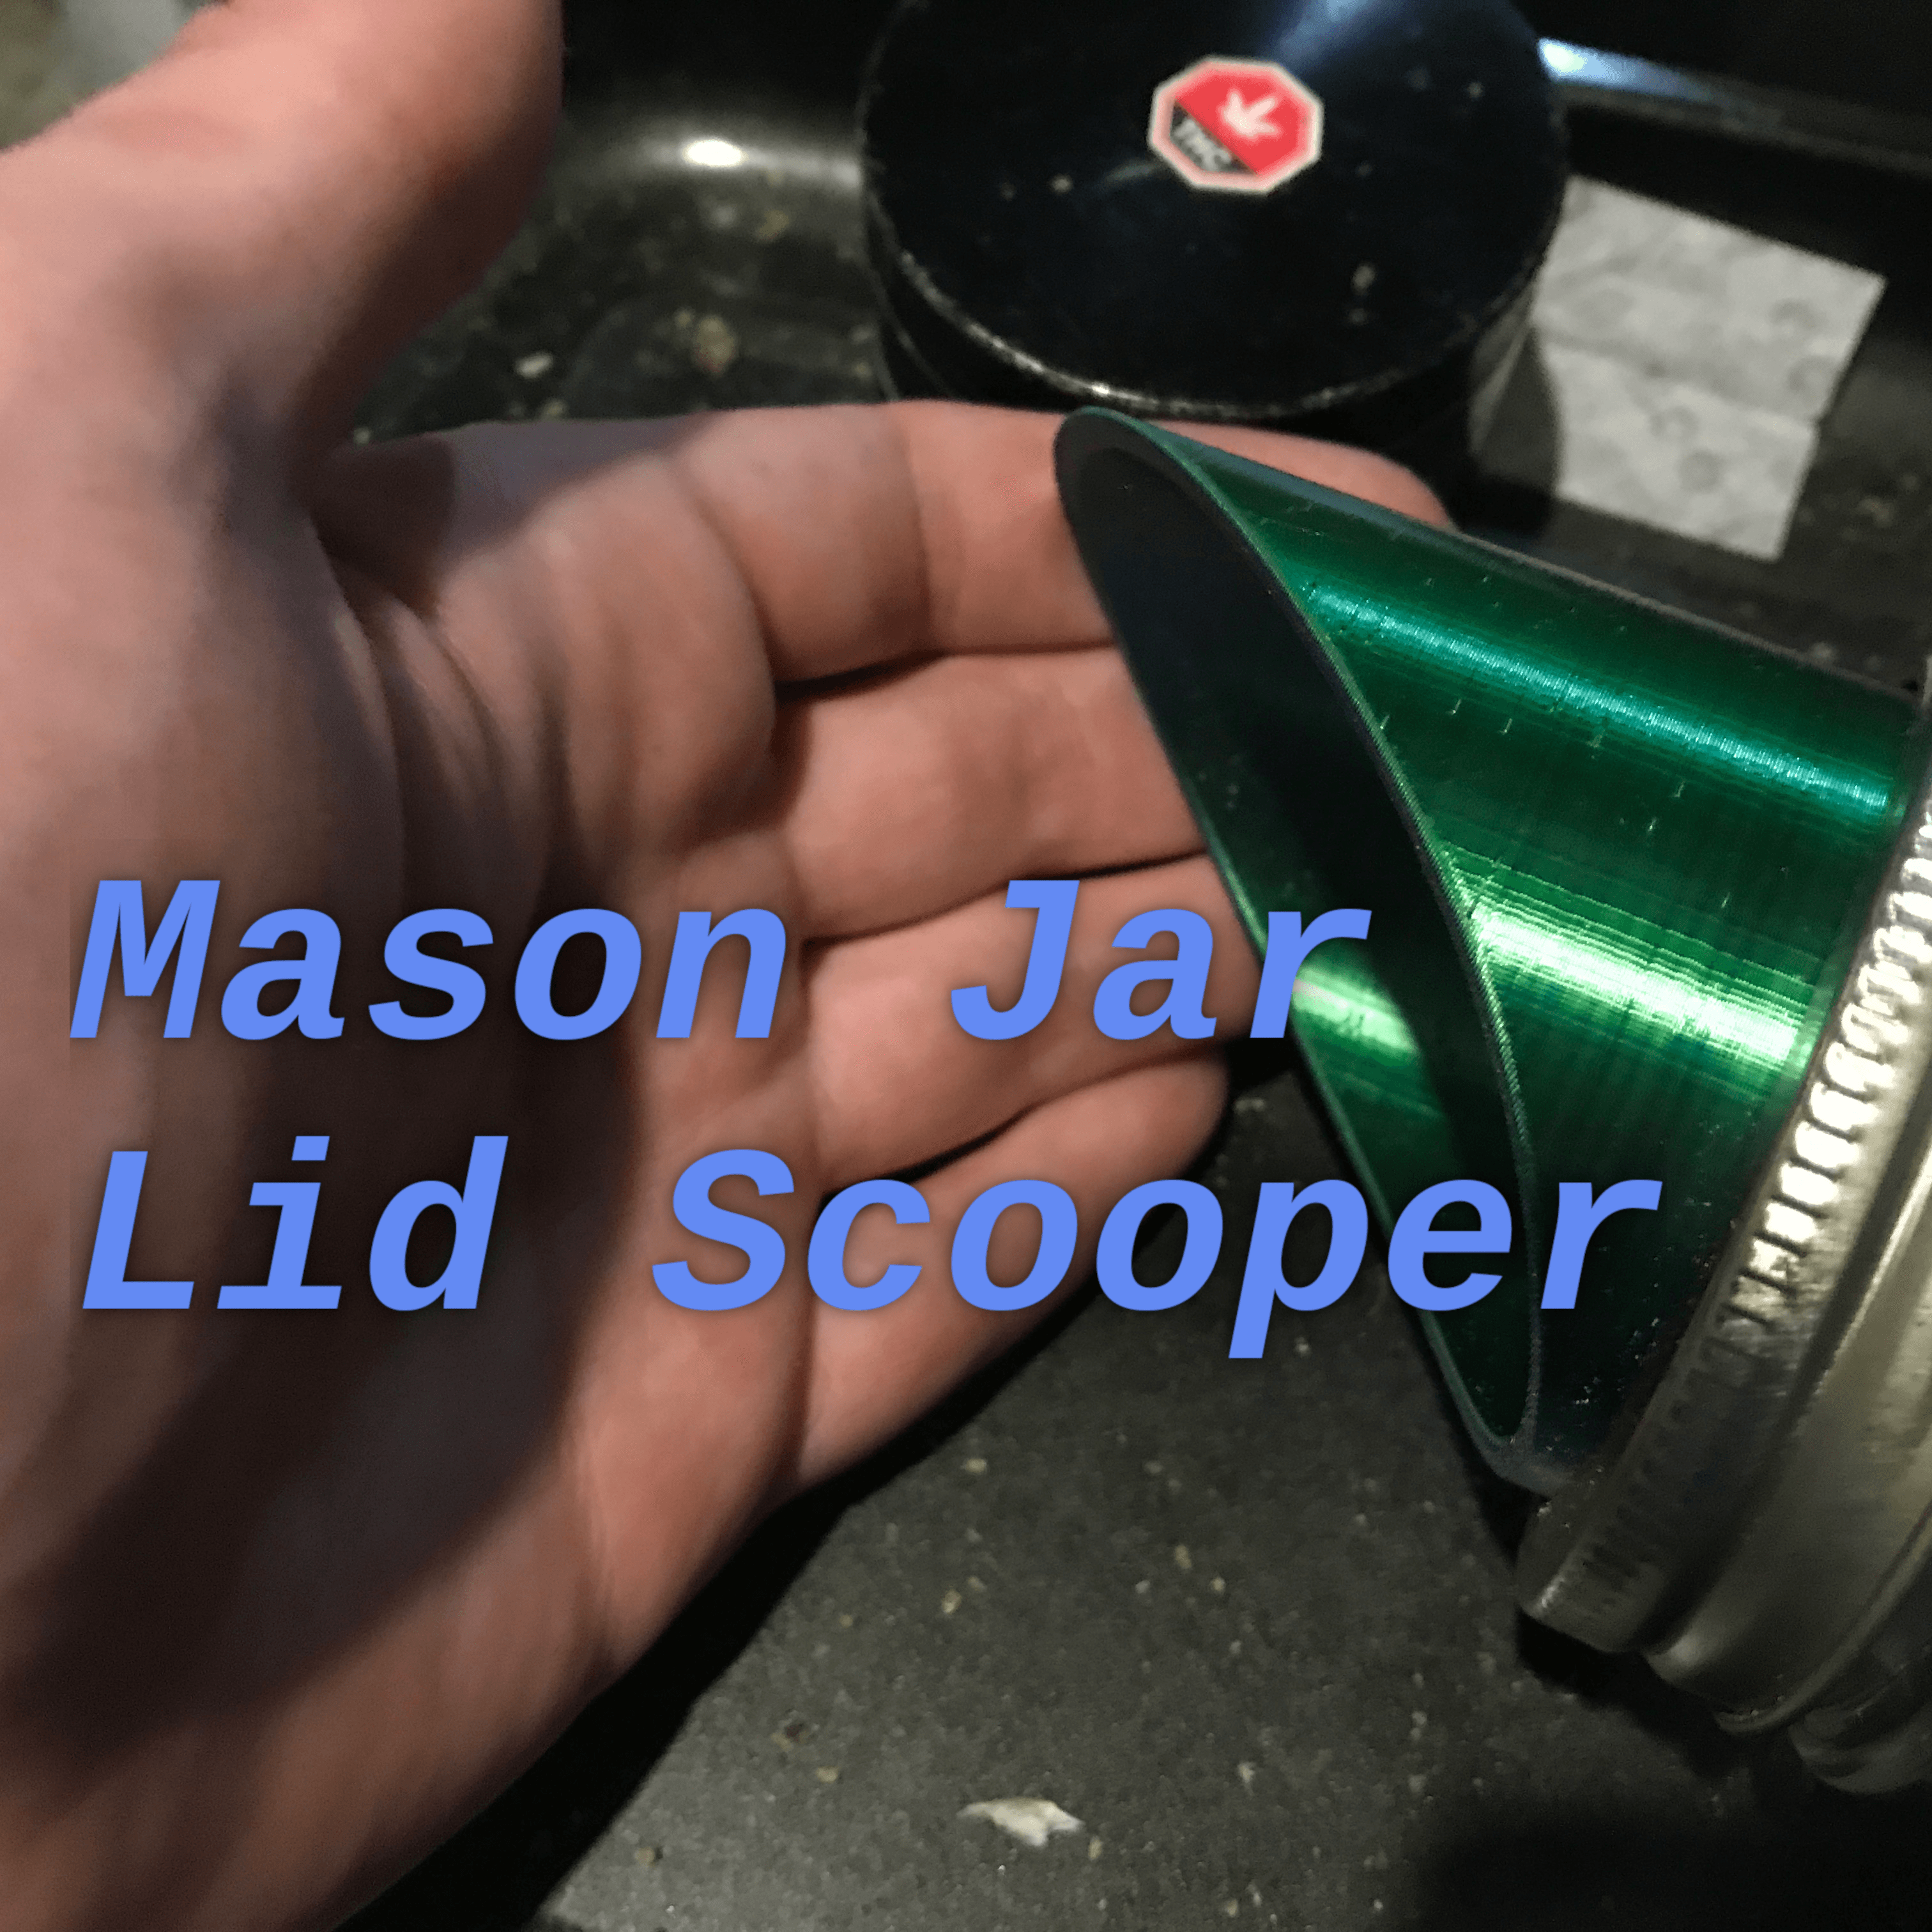 Mason jar scooper attachment 3d model